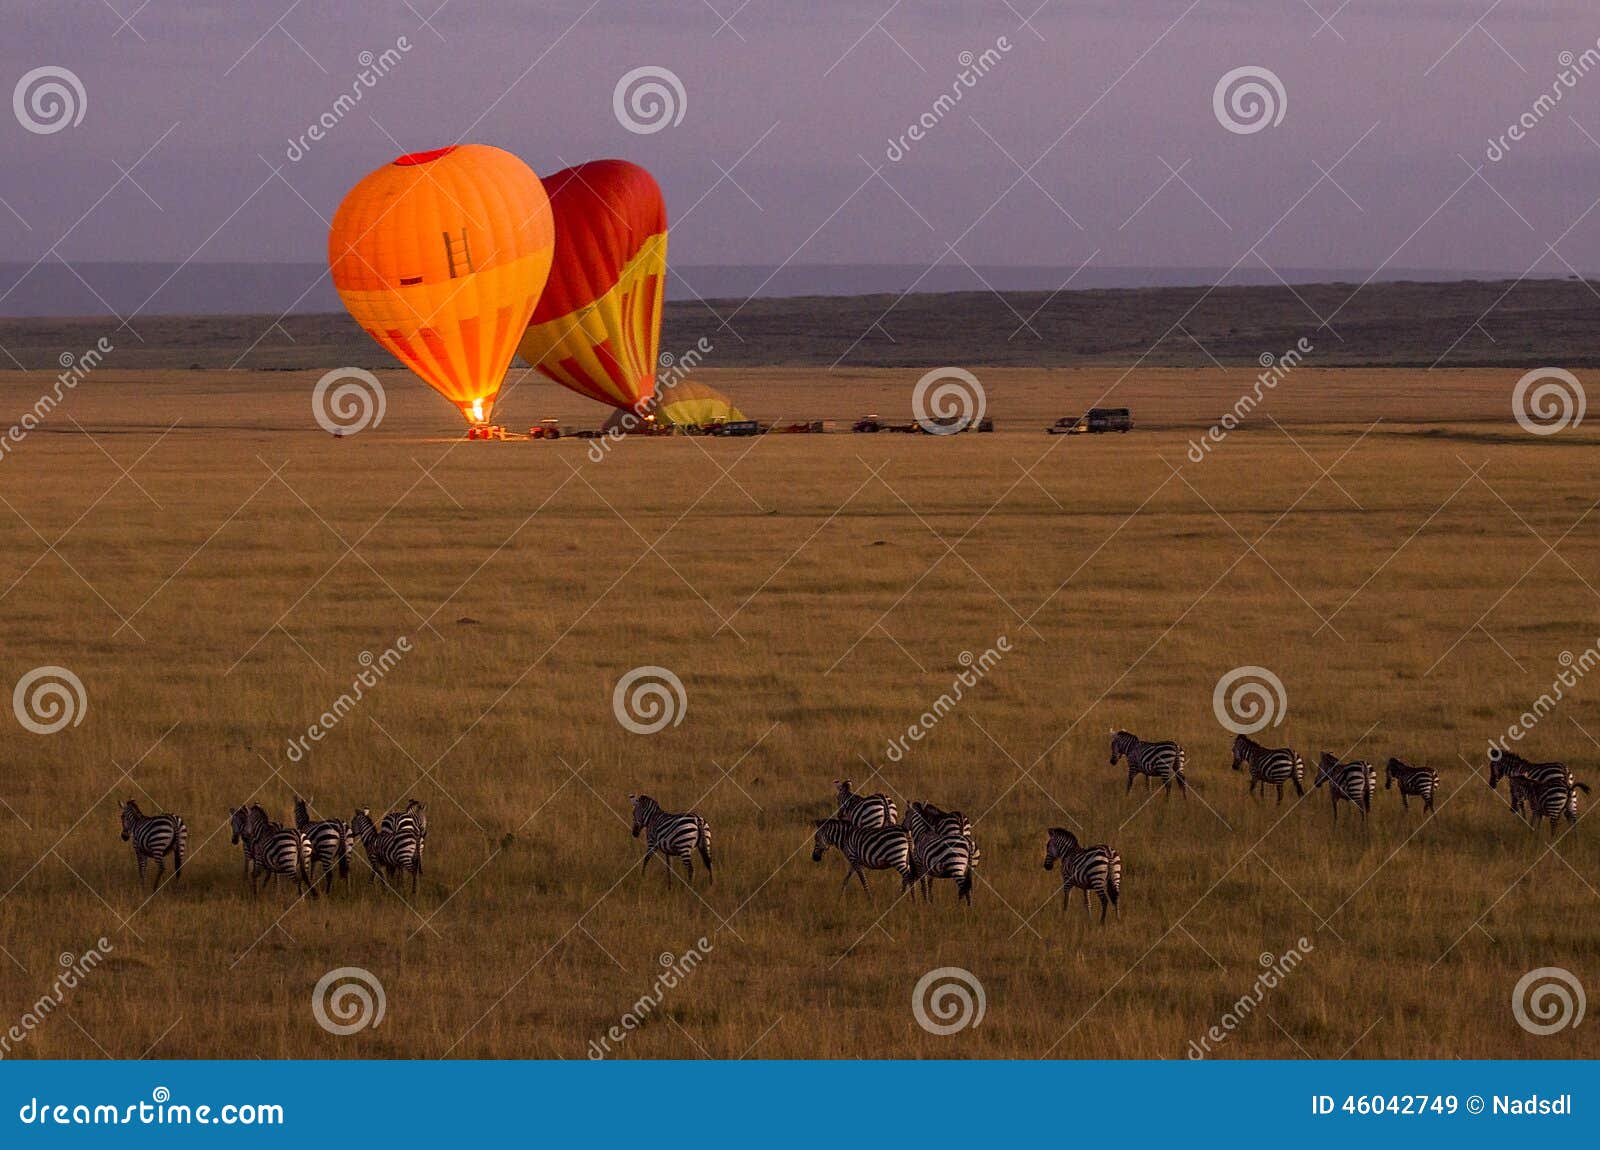 hot air balloon in the masai mara